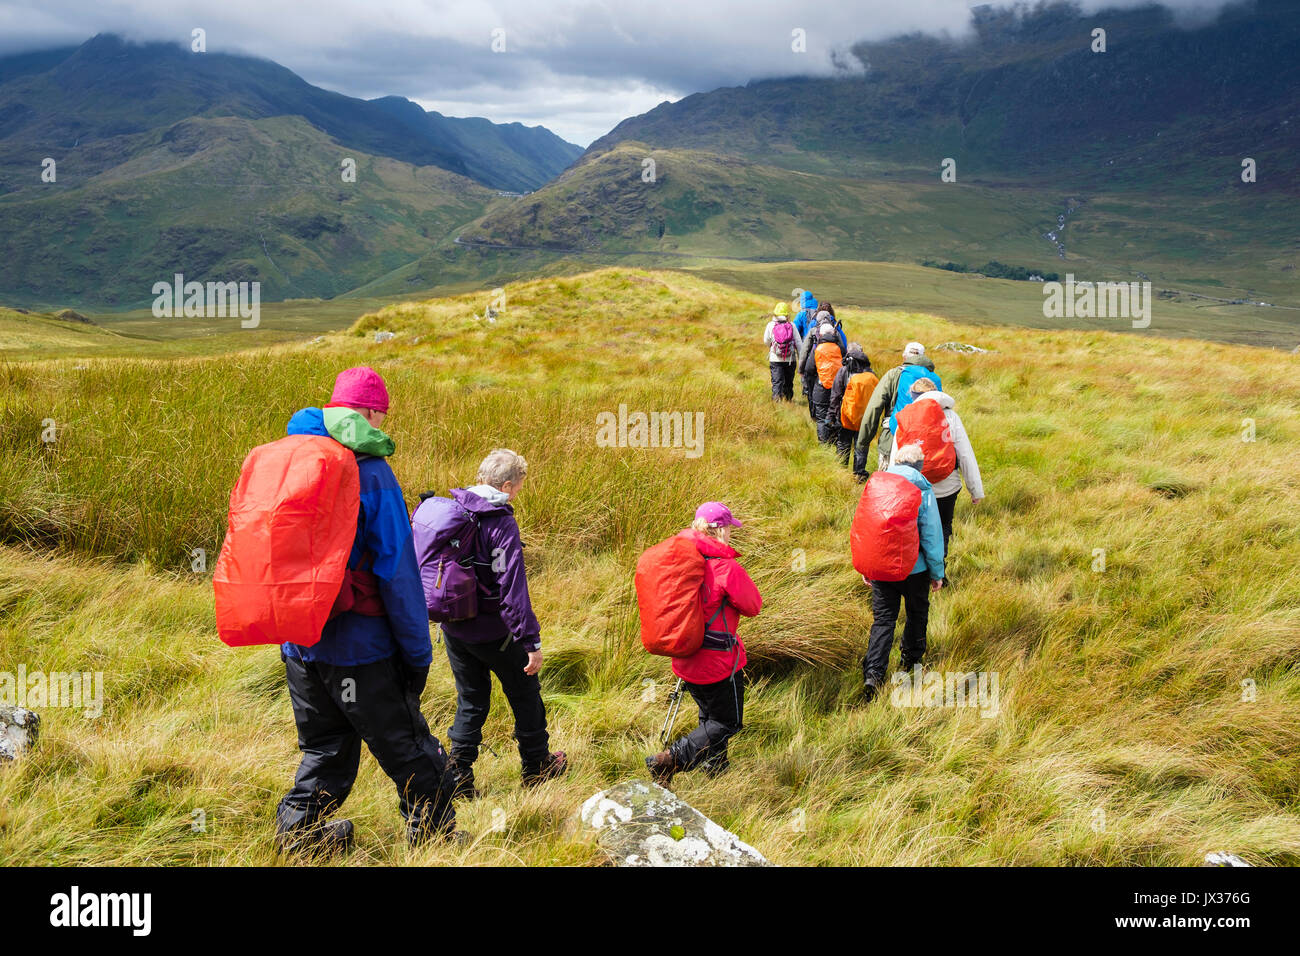 Les personnes portant des vêtements de pluie sur Carnedd y Cribau trekking jusqu'à Pen y Gwryd au soleil suite à la pluie de temps humide dans les montagnes de Snowdonia. Pays de Galles Royaume-Uni Banque D'Images